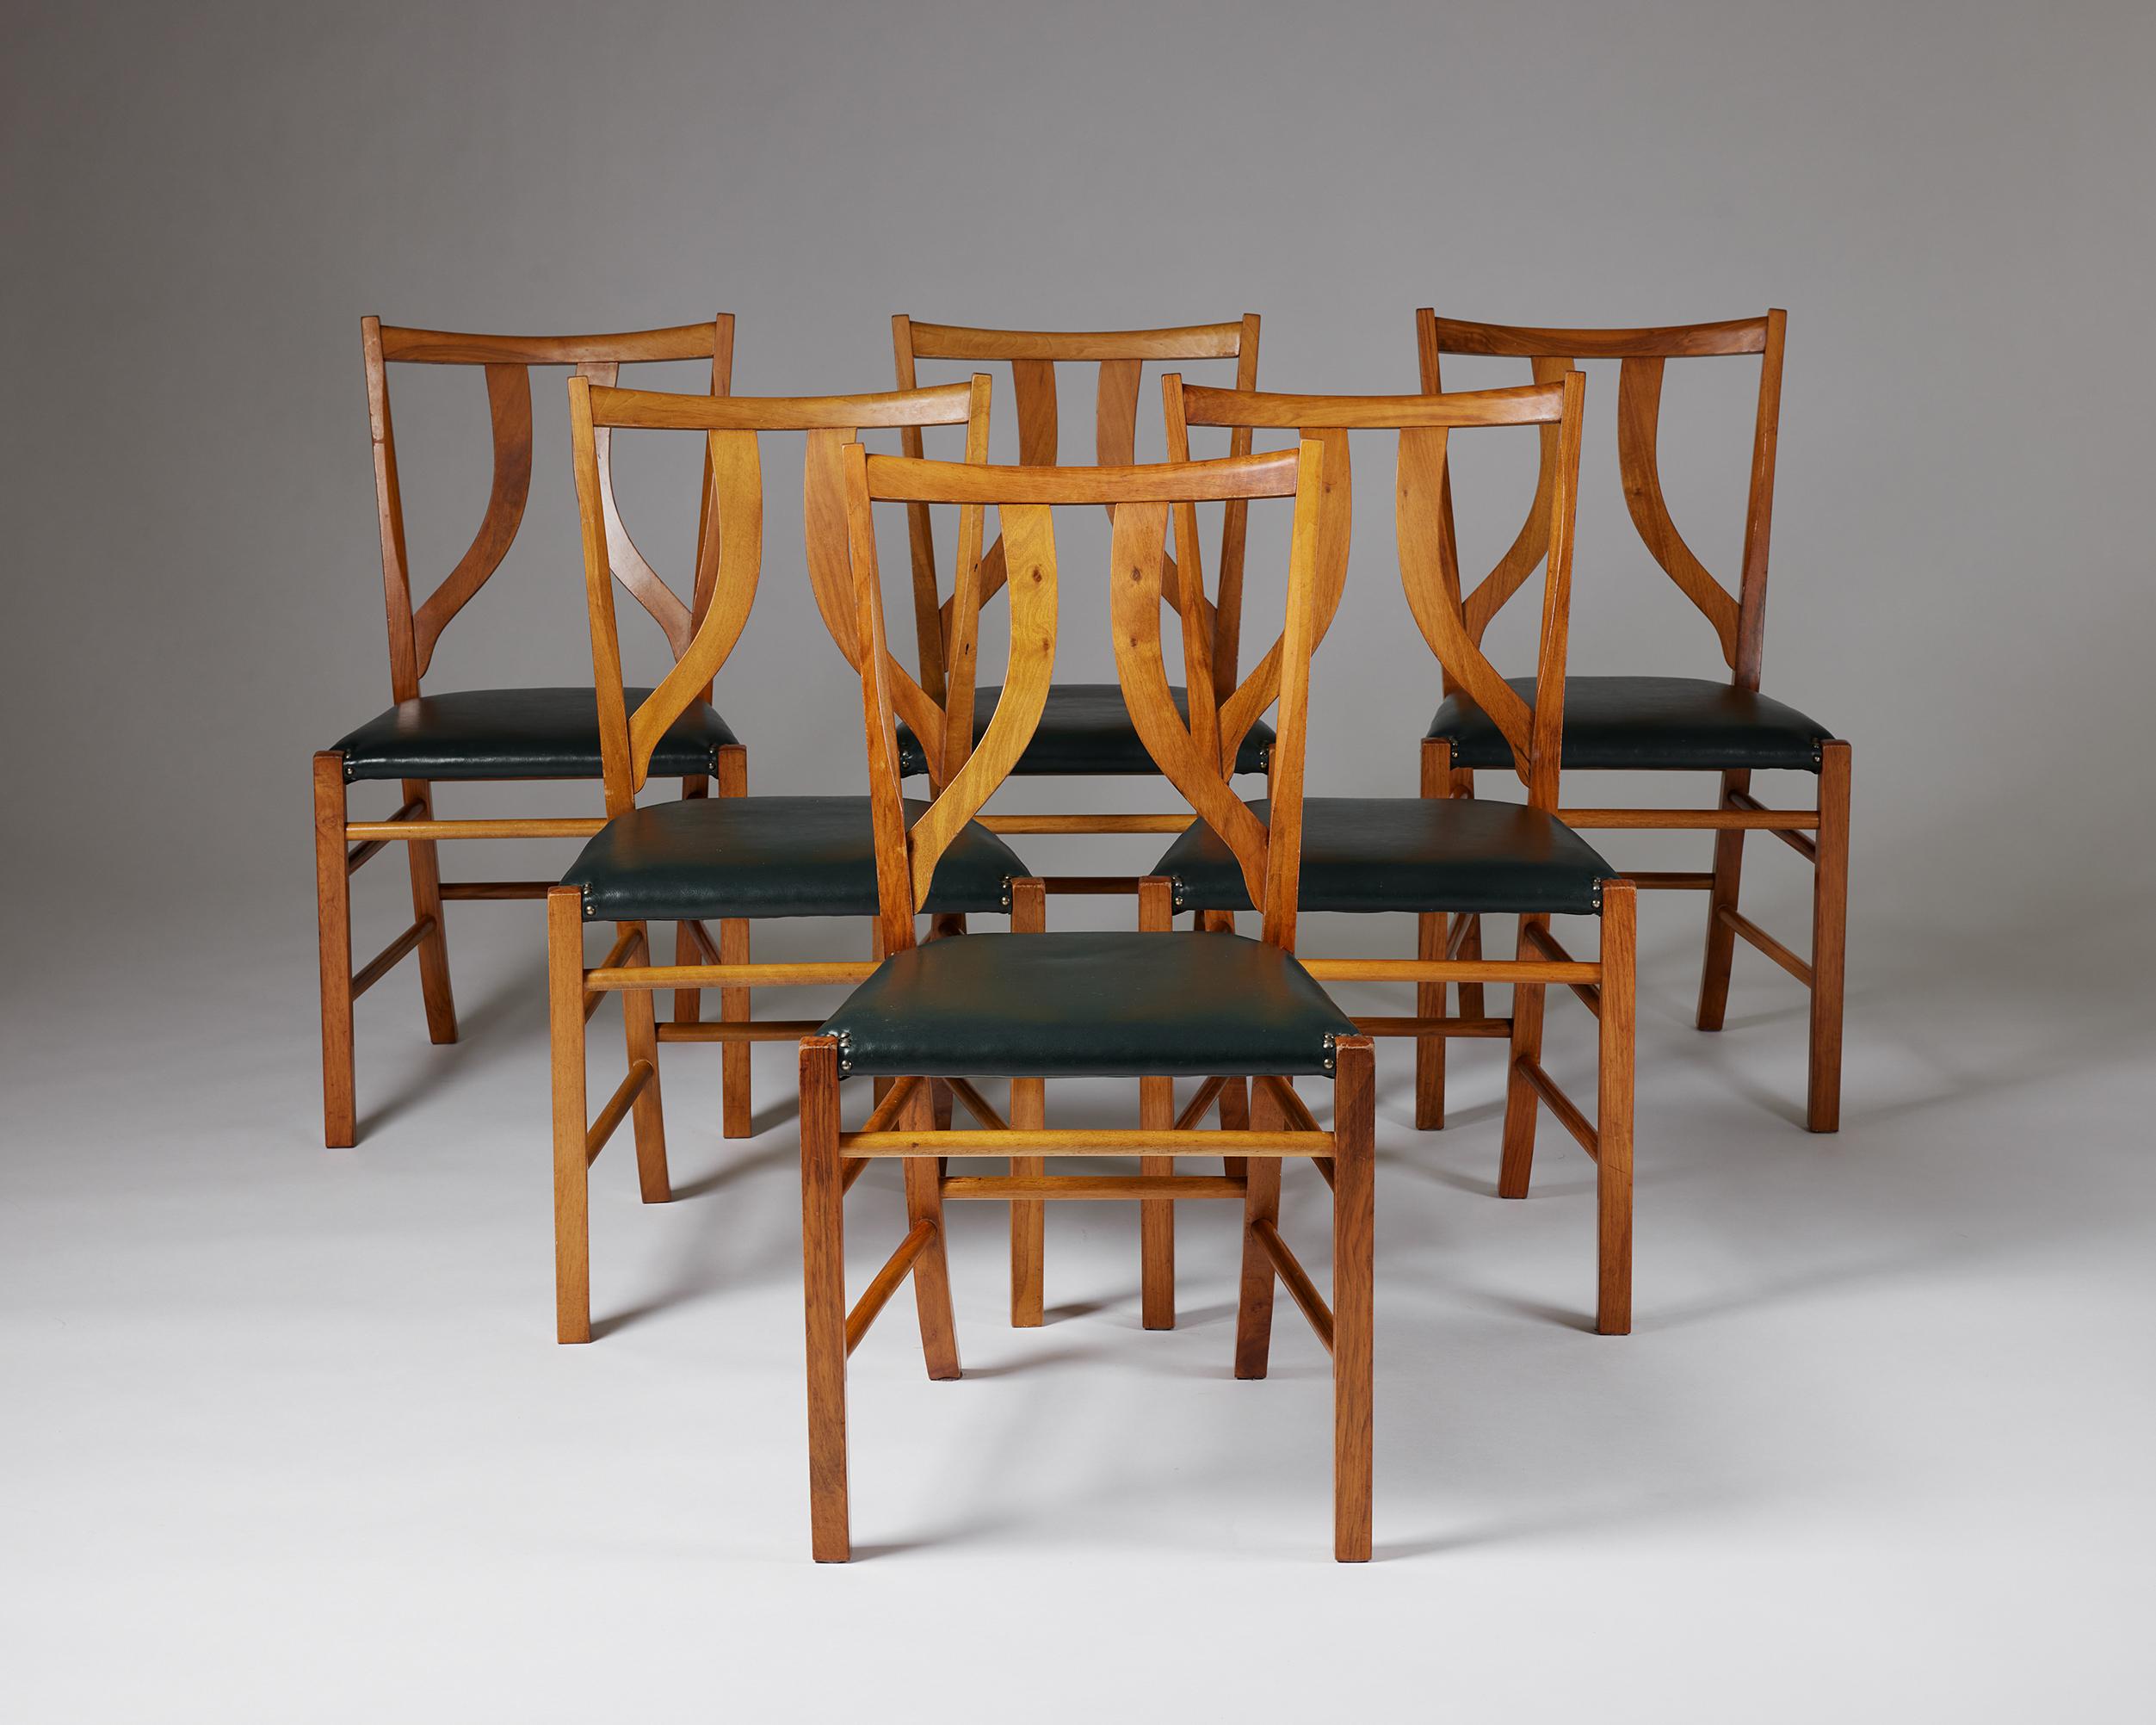 Ensemble de six chaises de salle à manger modèle 2027 conçu par Josef Frank pour Svenskt Tenn,
Suède, années 1950.

Acajou, cuir et laiton.

Josef Franks a développé son style caractéristique en combinant des éléments de l'élégance viennoise avec le